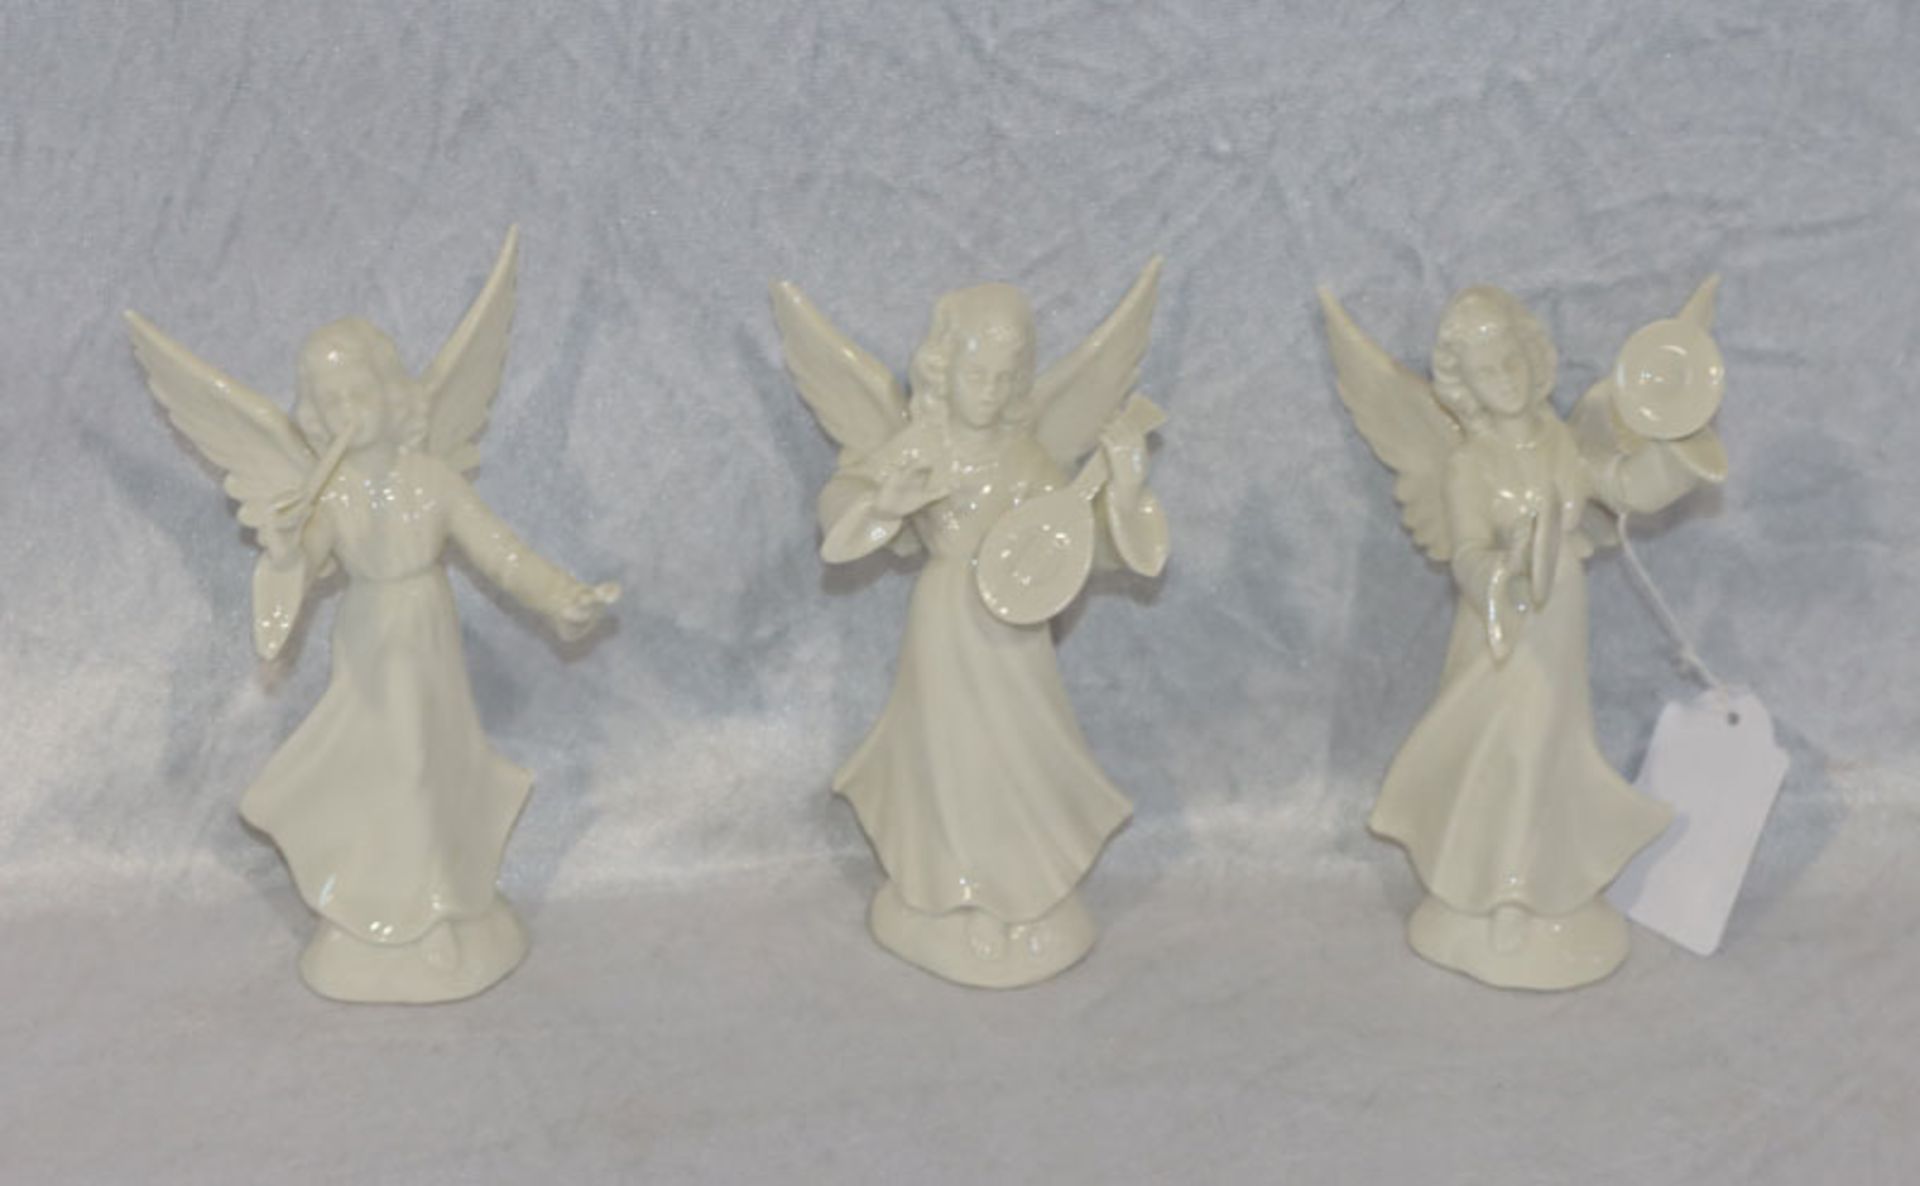 3 Dresden Porzellan Figuren 'Musizierende Engel', weiß glasiert, H 13/14 cm, teils Finger